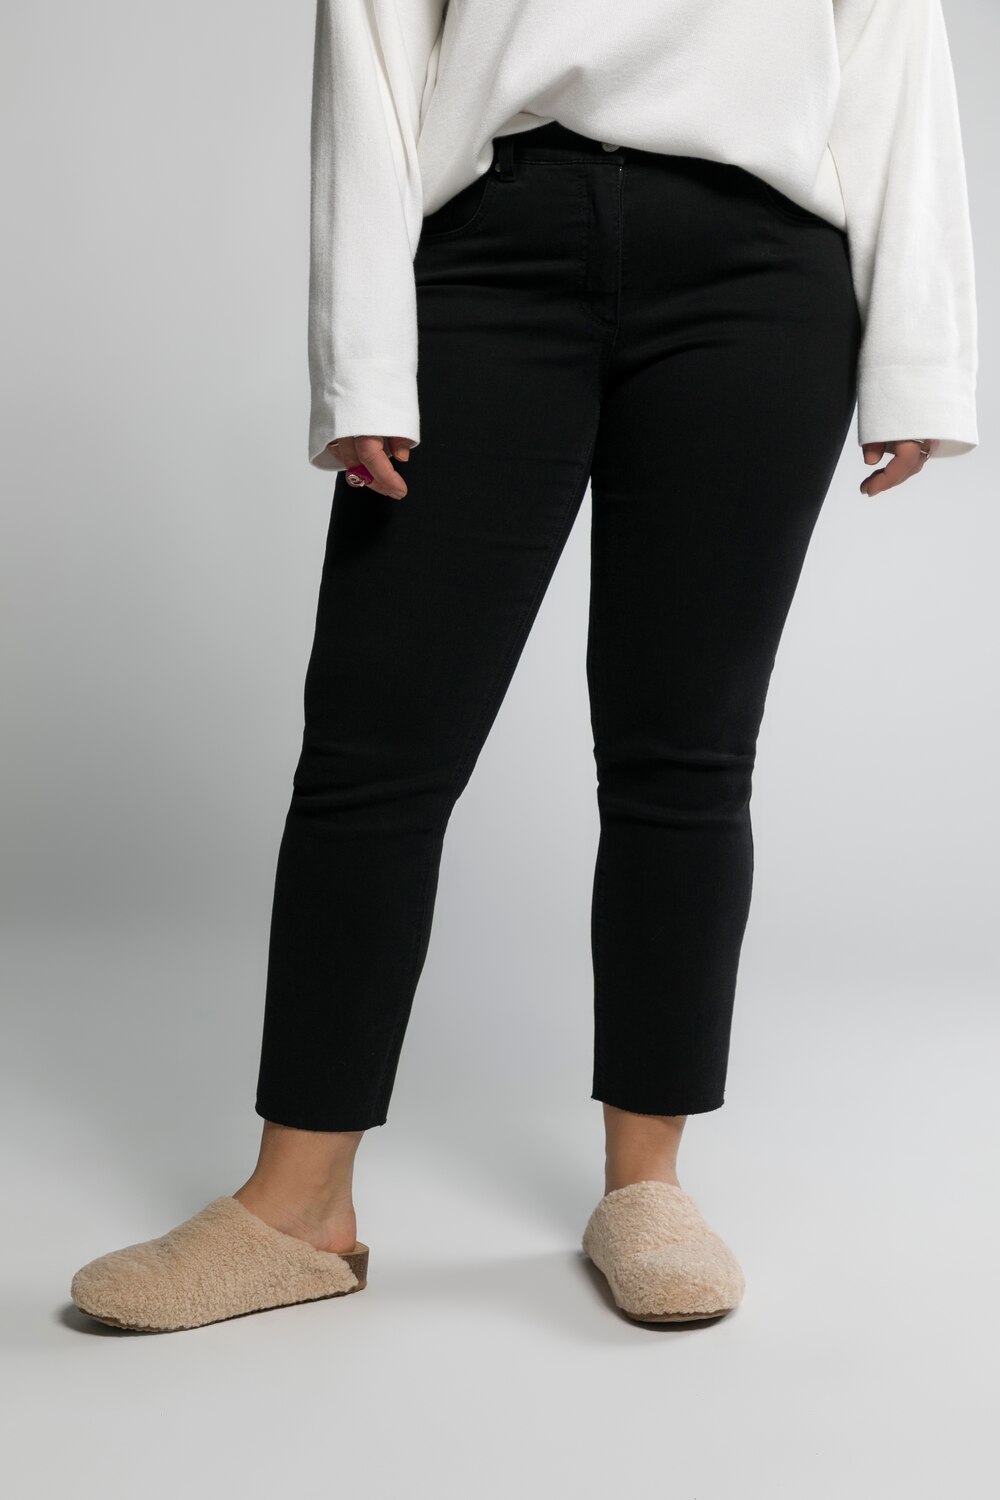 Grote Maten jeans, Dames, zwart, Maat: 48, Katoen/Polyester, Studio Untold